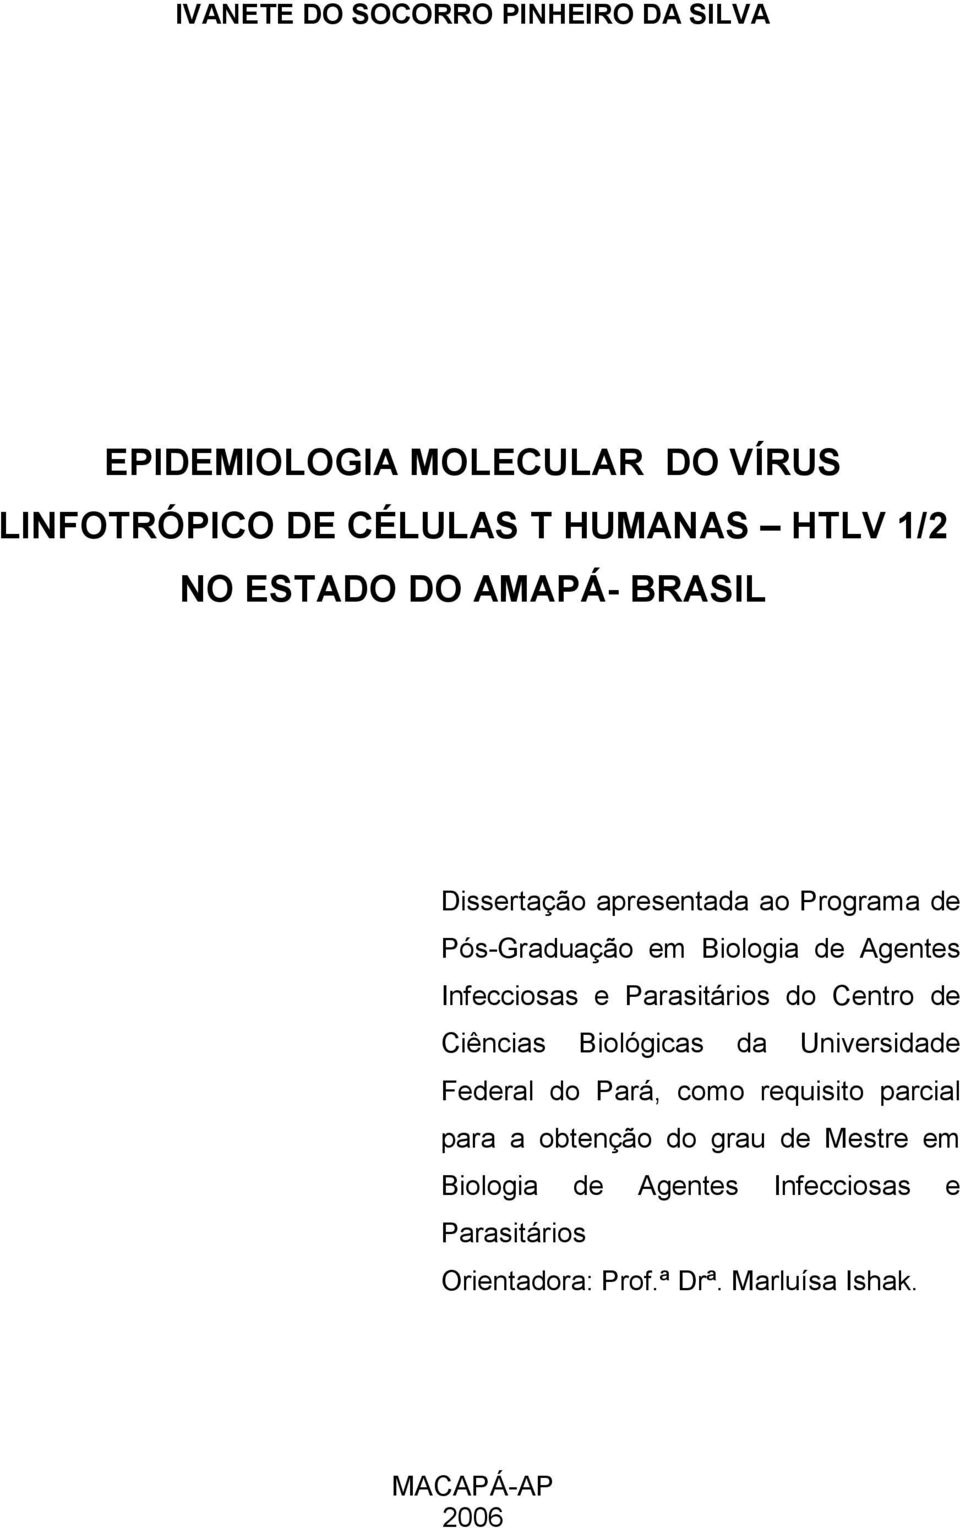 Parasitários do Centro de Ciências Biológicas da Universidade Federal do Pará, como requisito parcial para a obtenção